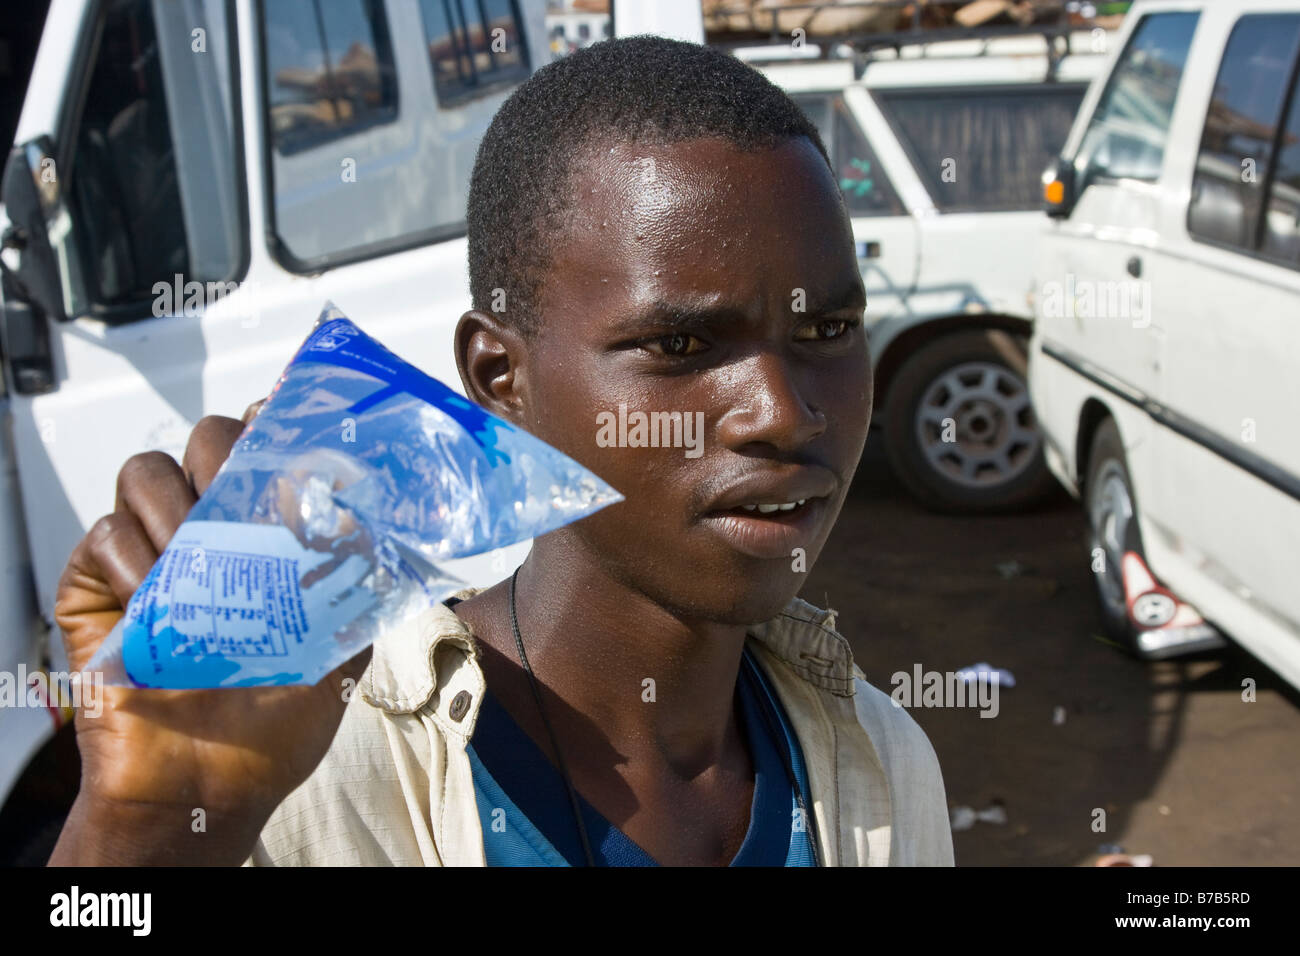 Jeune homme vendant de l'eau potable à la station de bus ou à la Gare Routière Pompiers à Dakar au Sénégal Banque D'Images